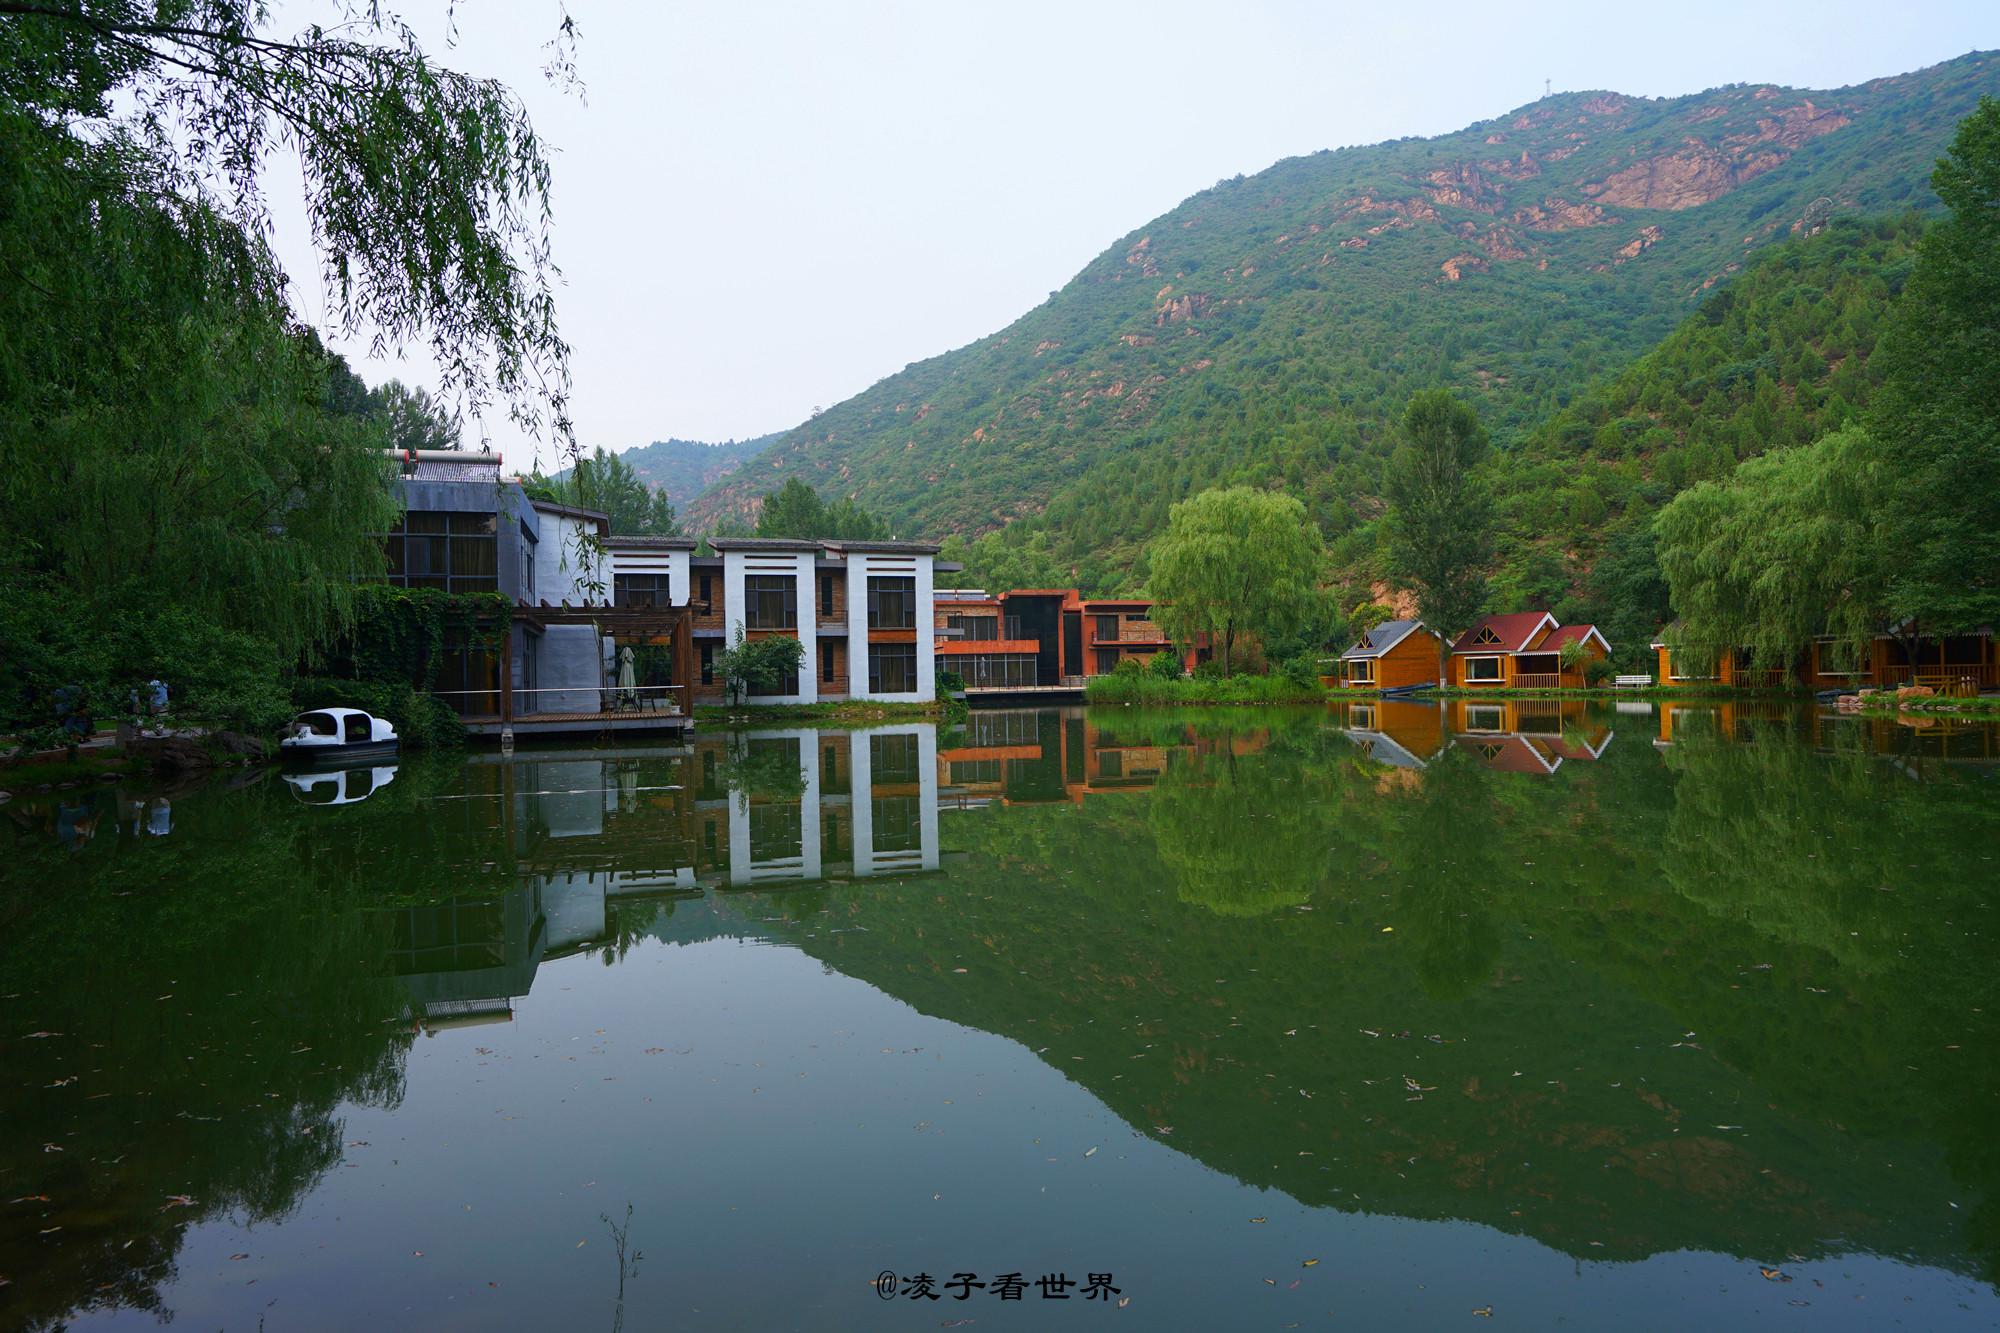 拍摄于北京密云仙居谷度假村之一-中关村在线摄影论坛